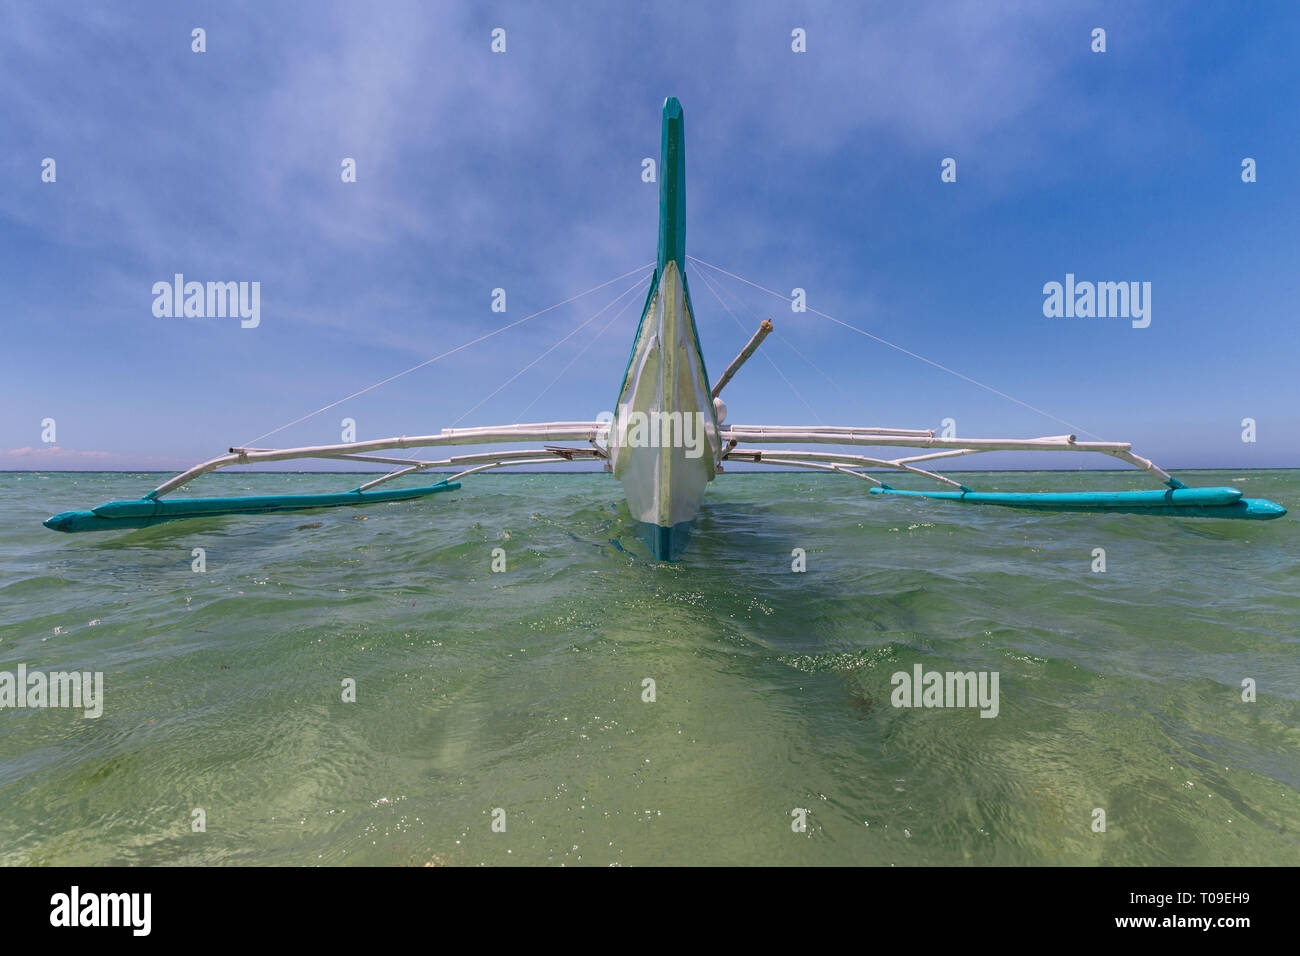 Outrigger pumpboat auf Wasser in Frontalansicht mit Weitwinkelobjektiv Perspektive mit blauem Himmel, weißen Wolken Hintergrund Stockfoto